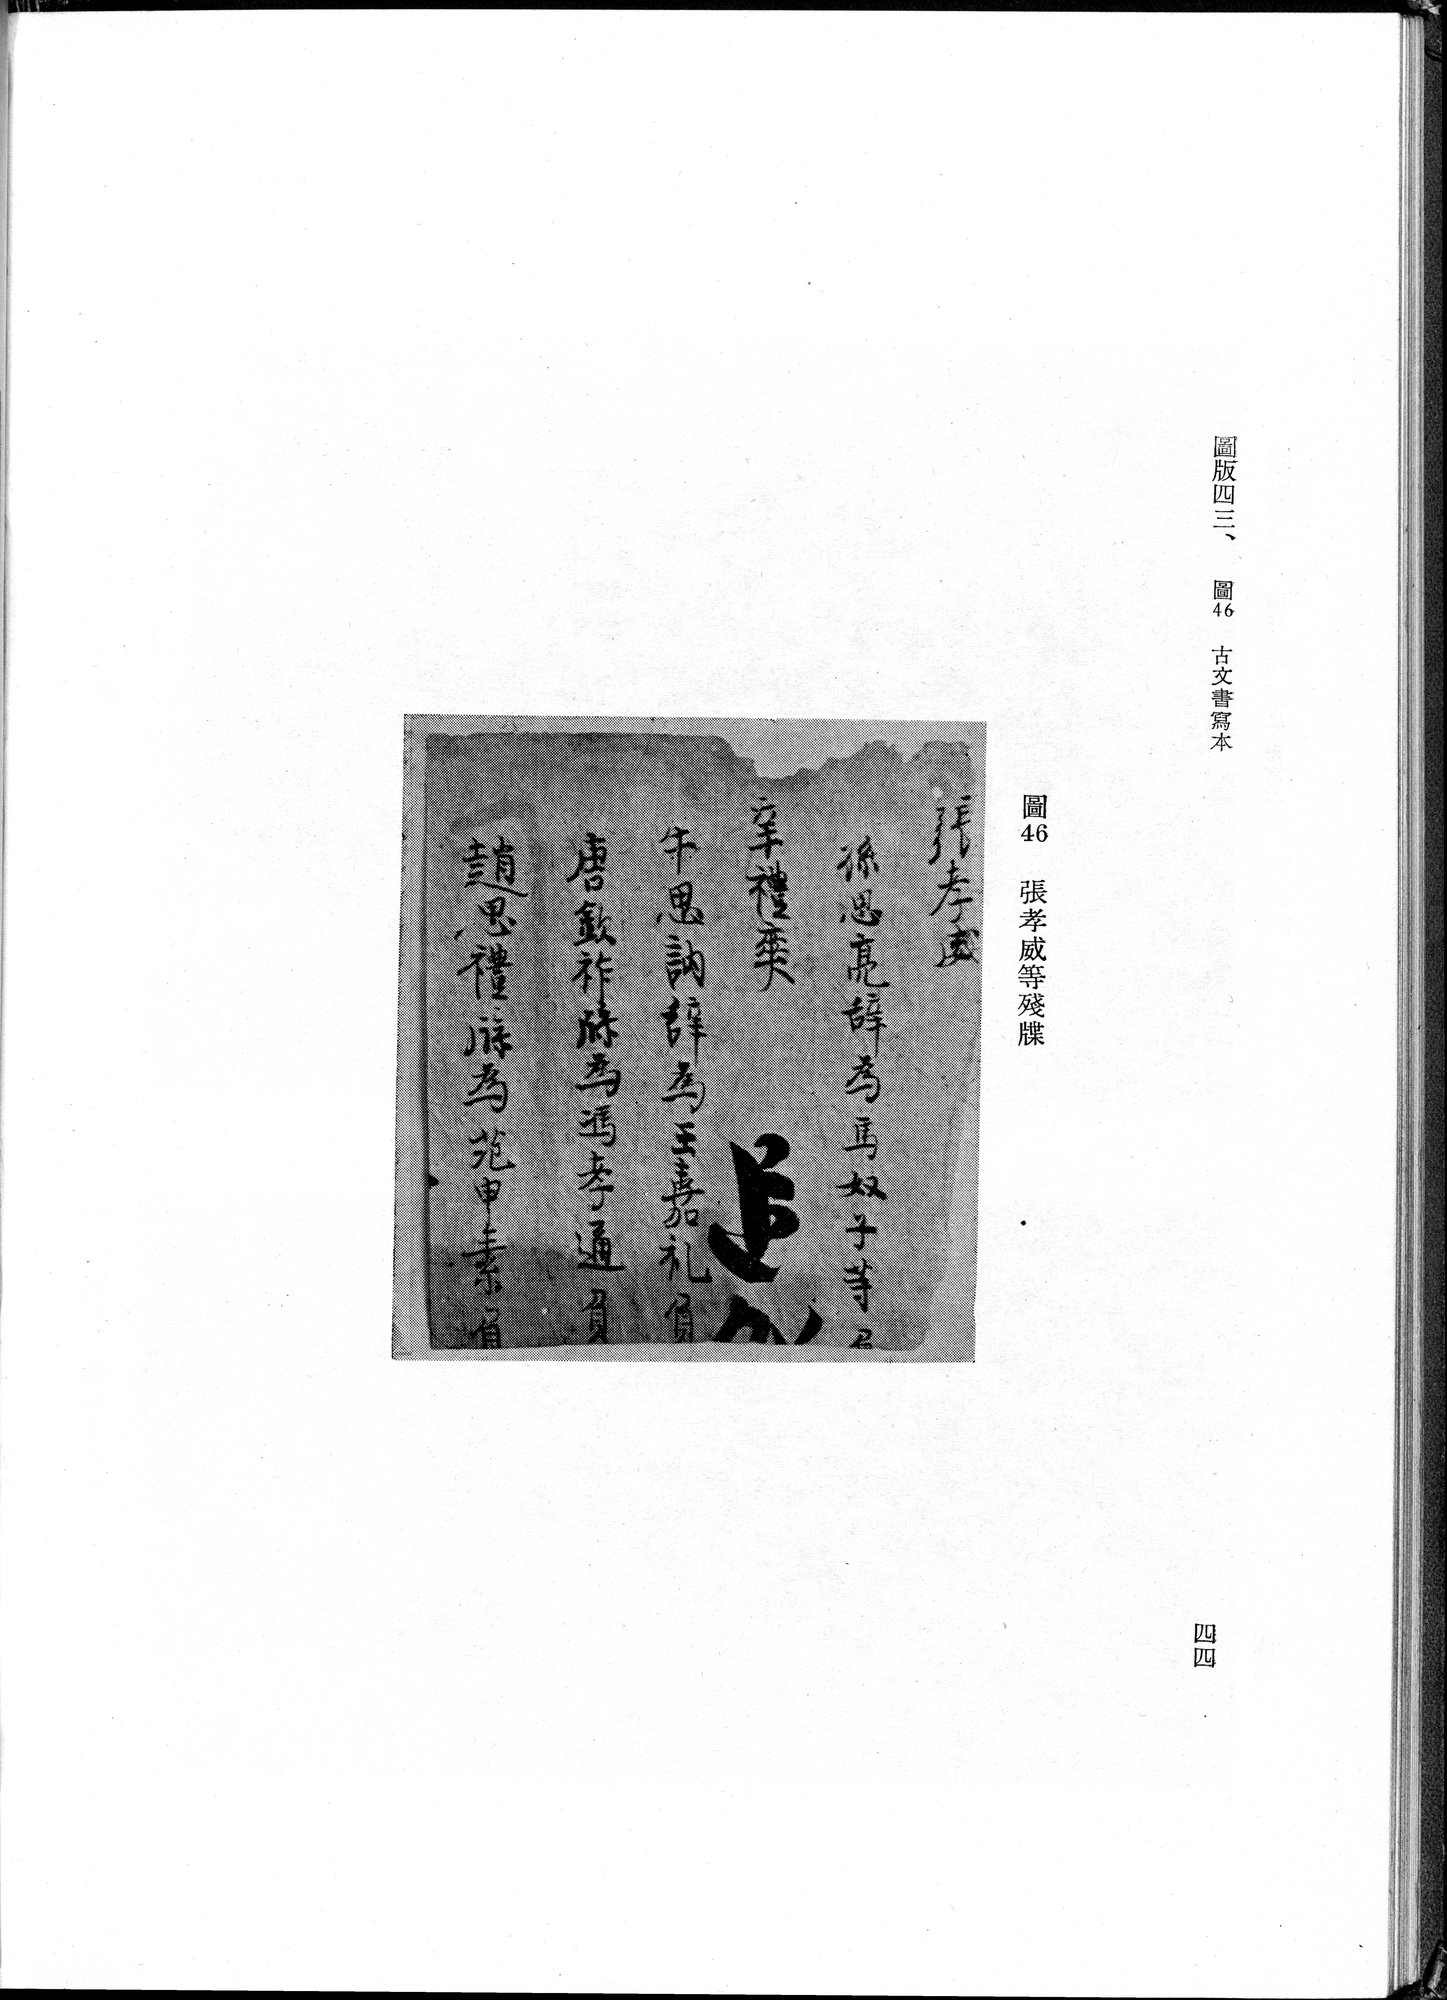 吐魯番考古記 : vol.1 / Page 150 (Grayscale High Resolution Image)